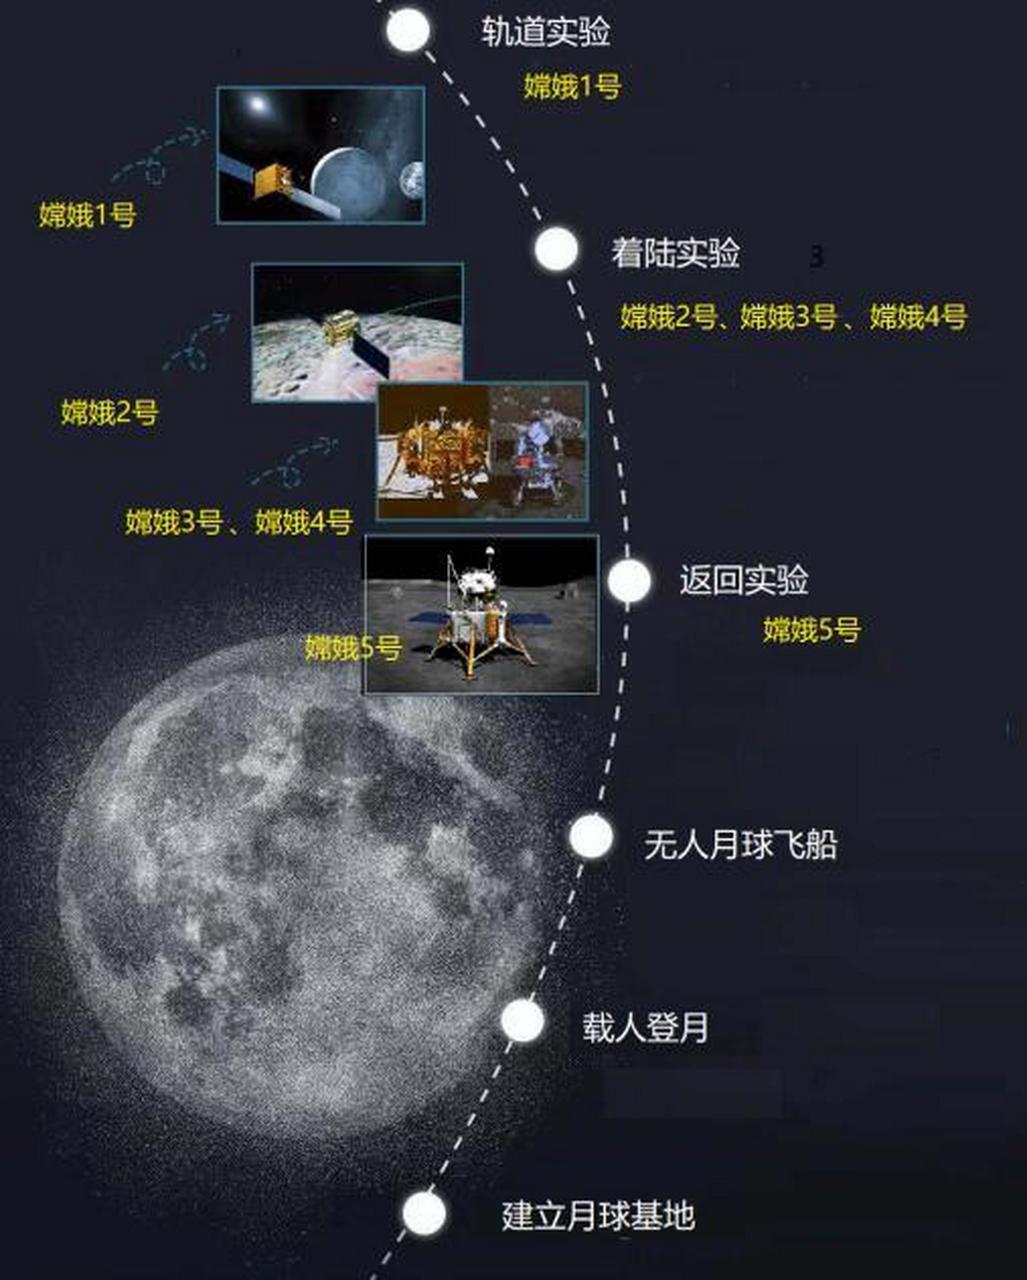 美局长要求分享嫦五月壤:中国没表示!嫦娥六号筹备,有何任务?